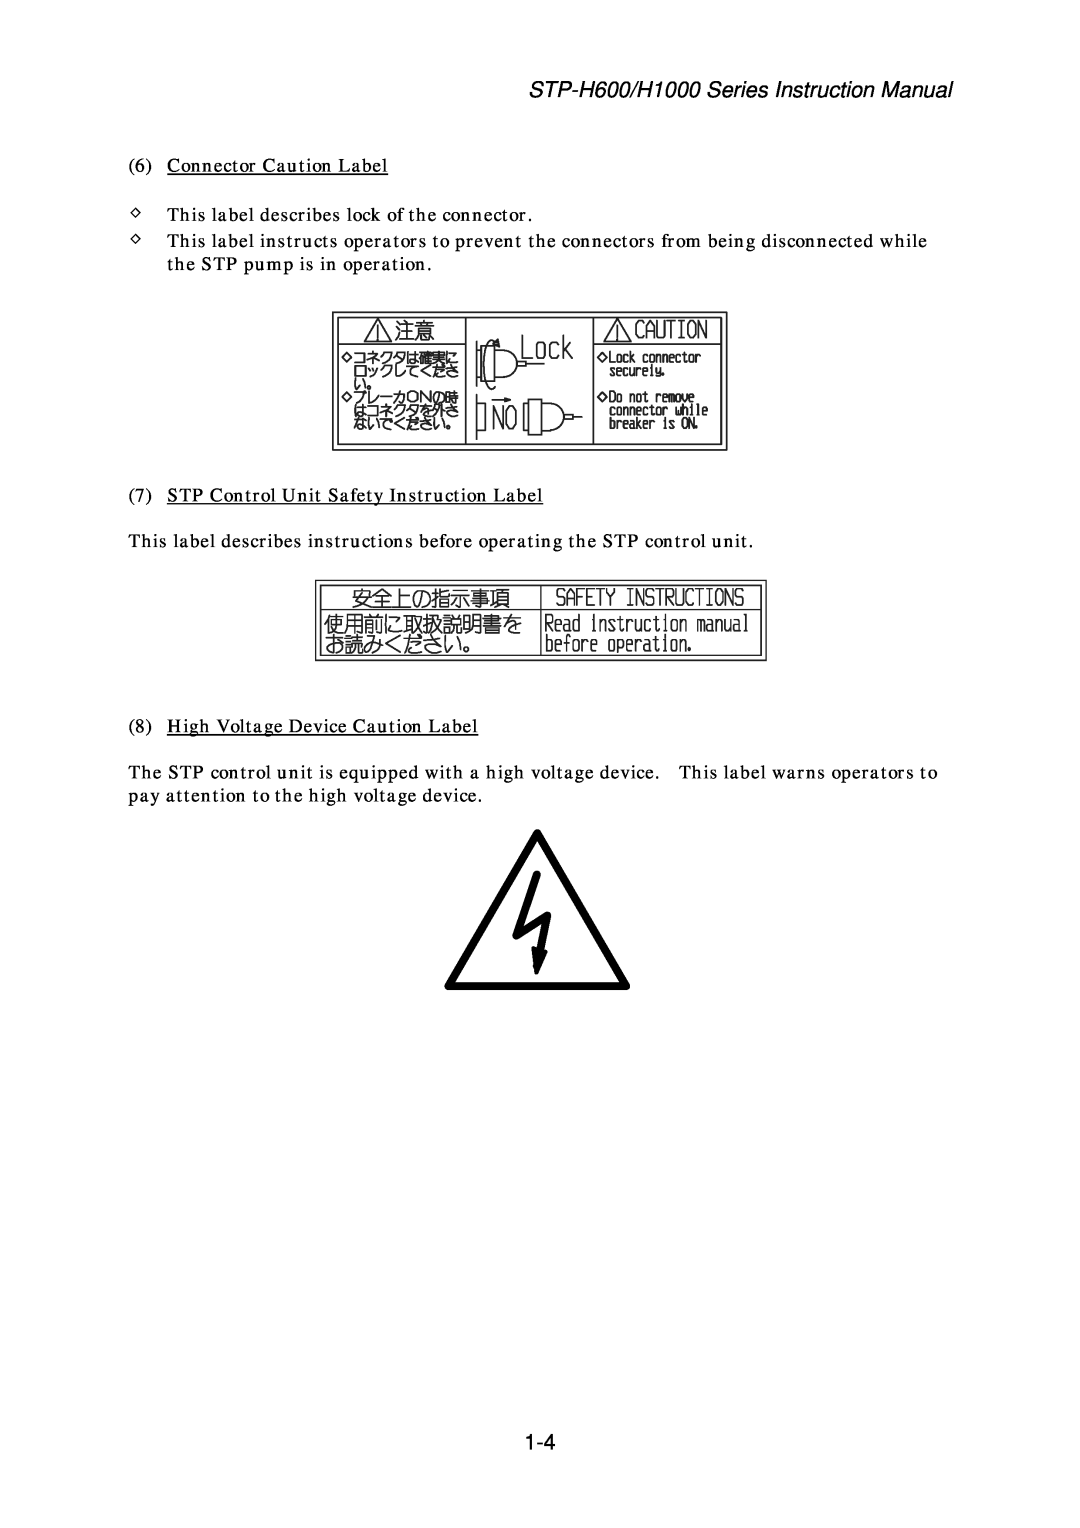 Seiko Instruments MT-17E-003-D instruction manual 6Connector Caution Label 